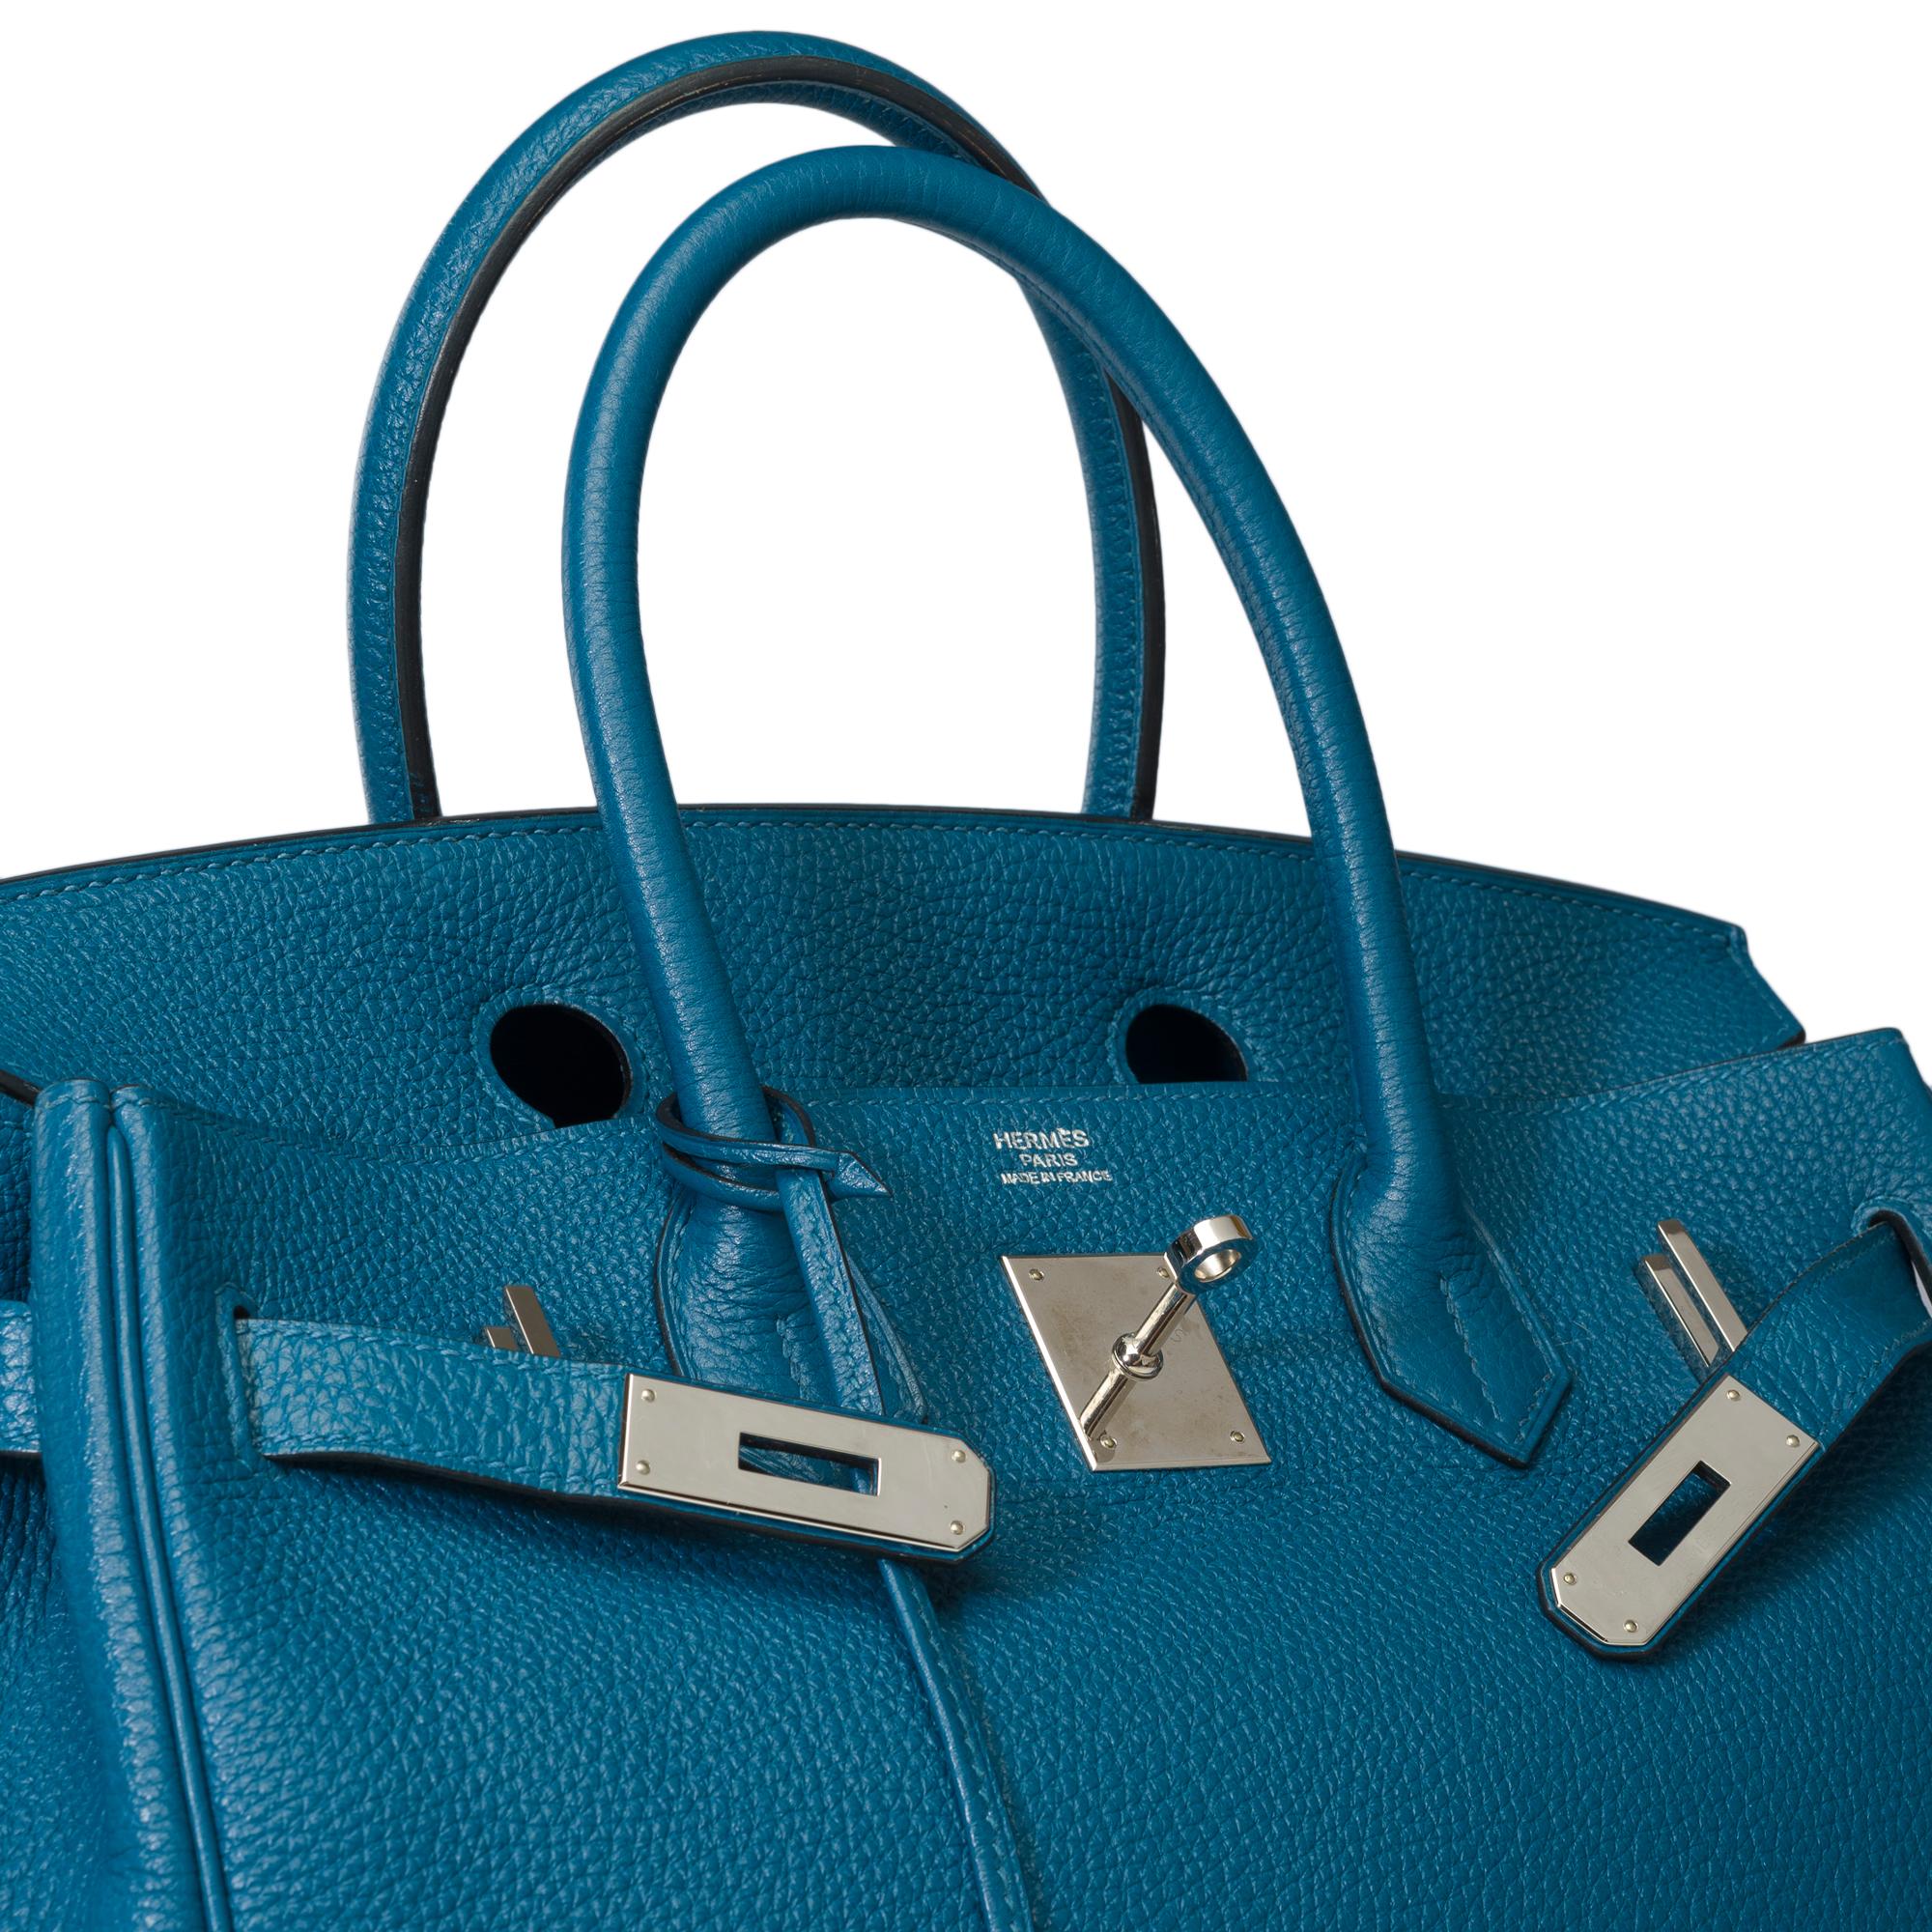 Stunning Hermes Birkin 30 handbag in Blue Togo leather, SHW For Sale 3